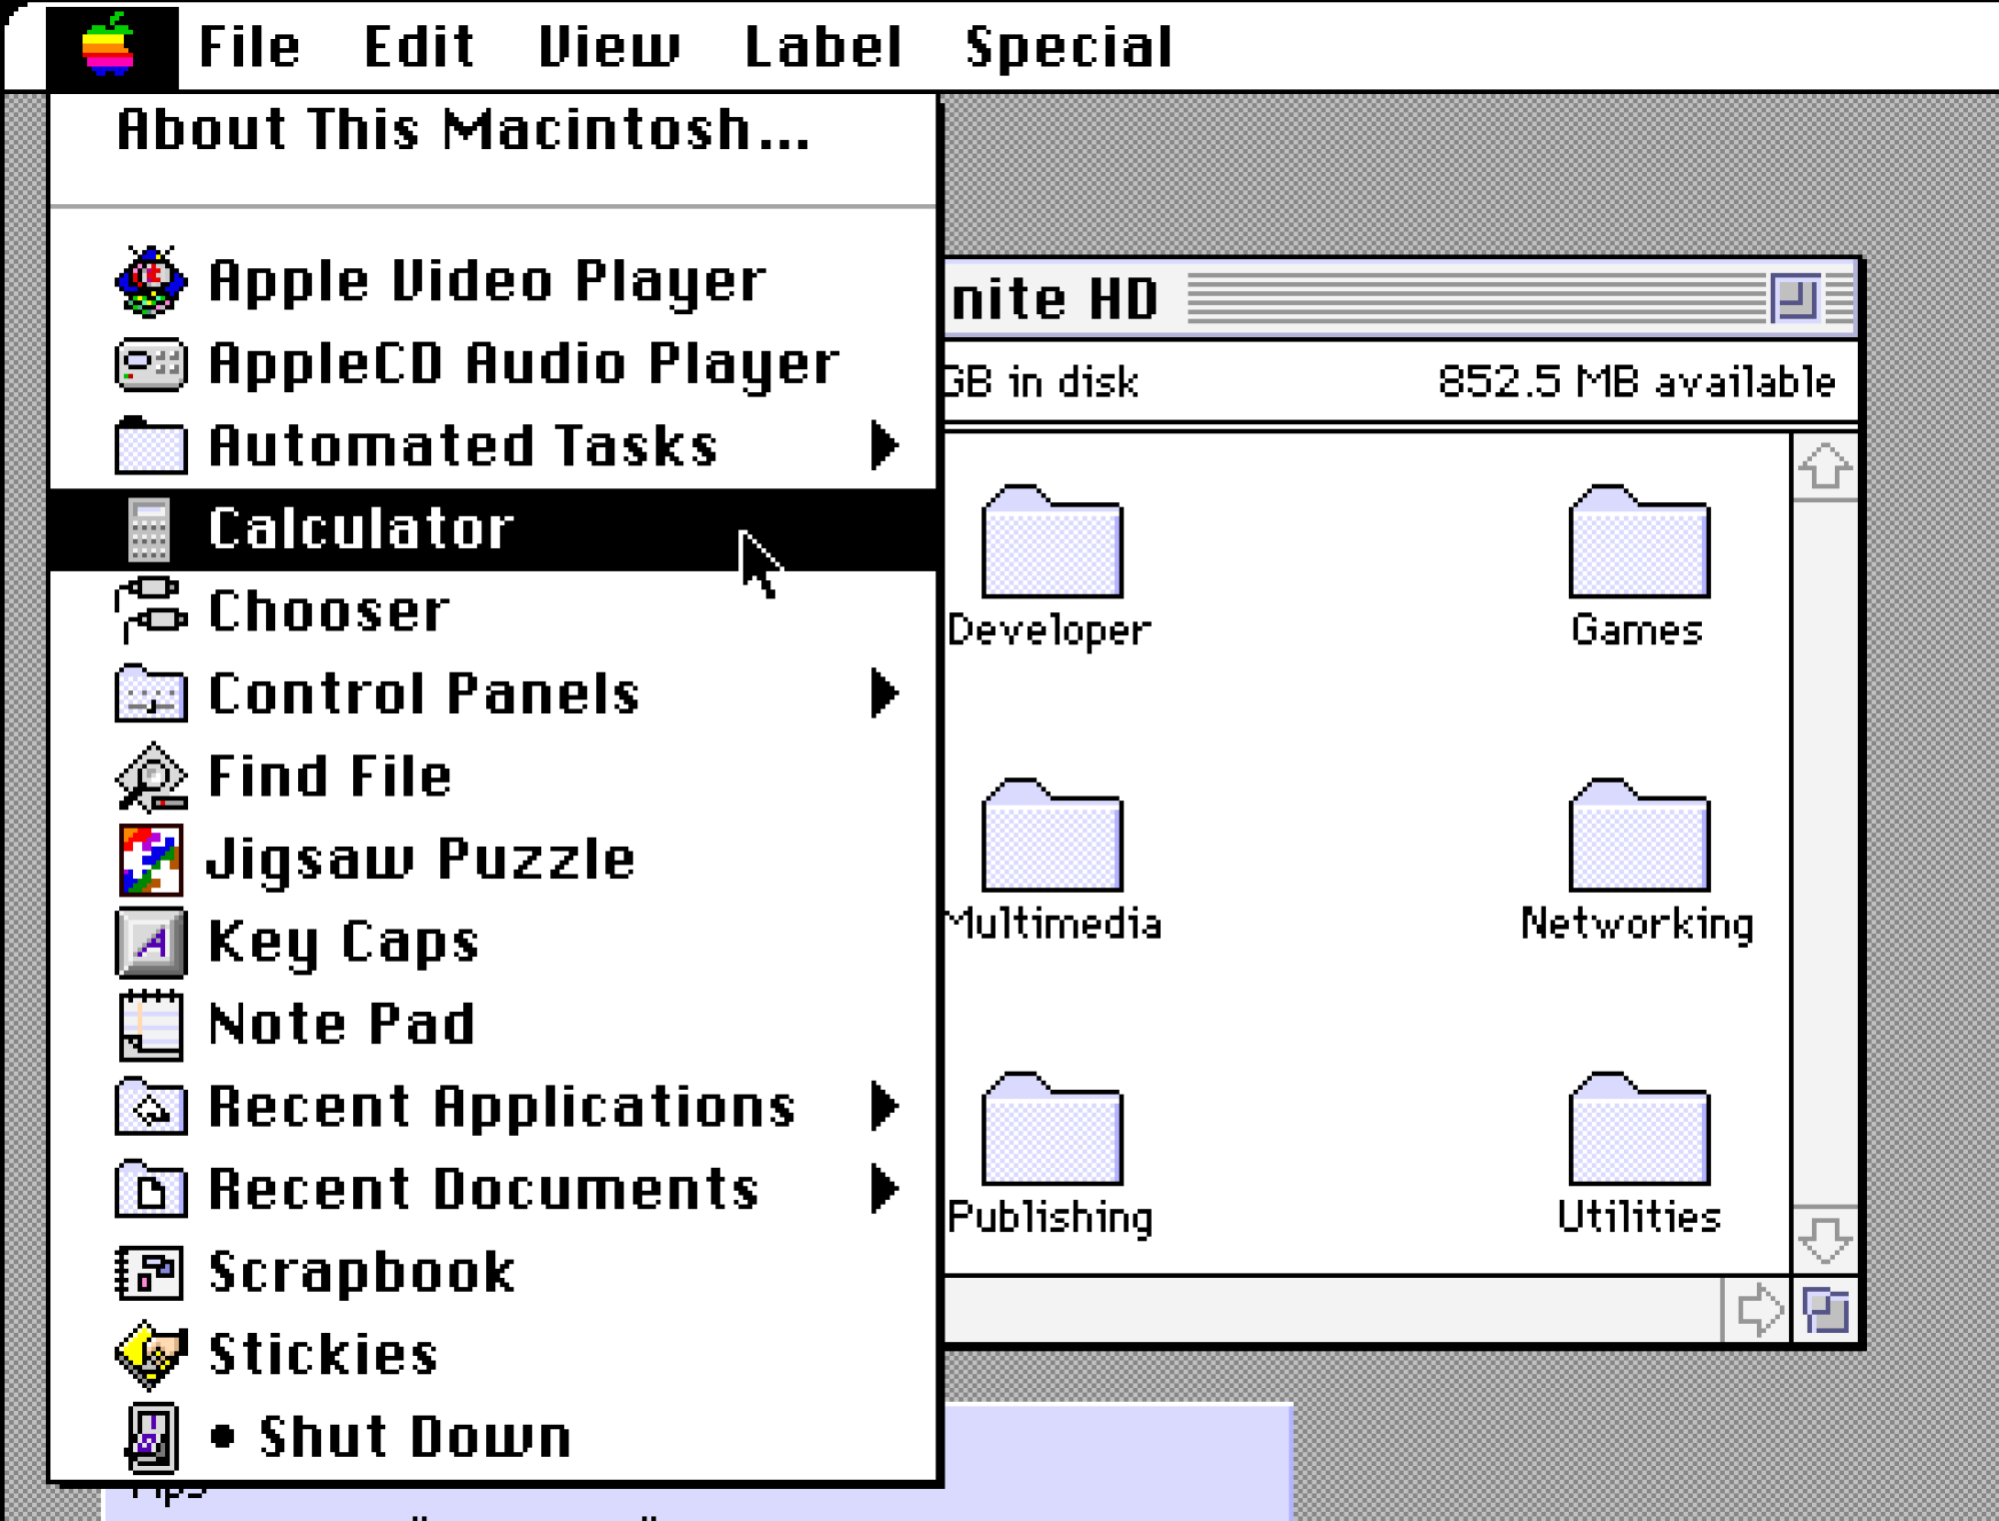 Скриншот меню класса Mac OS Apple, включающего список приложений для запуска.